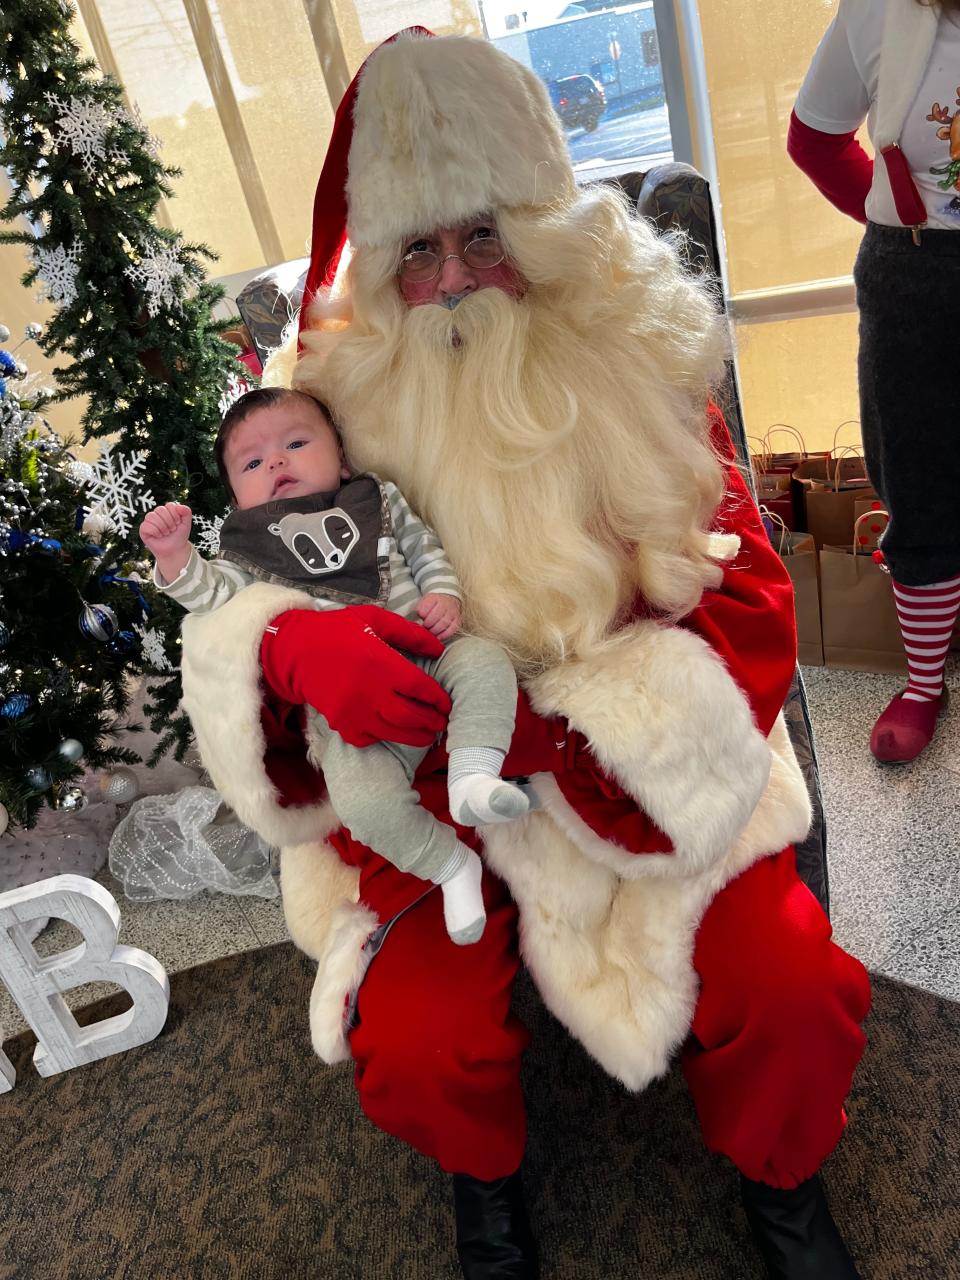 Santa met with children on Dec. 4 at GenoaBank.